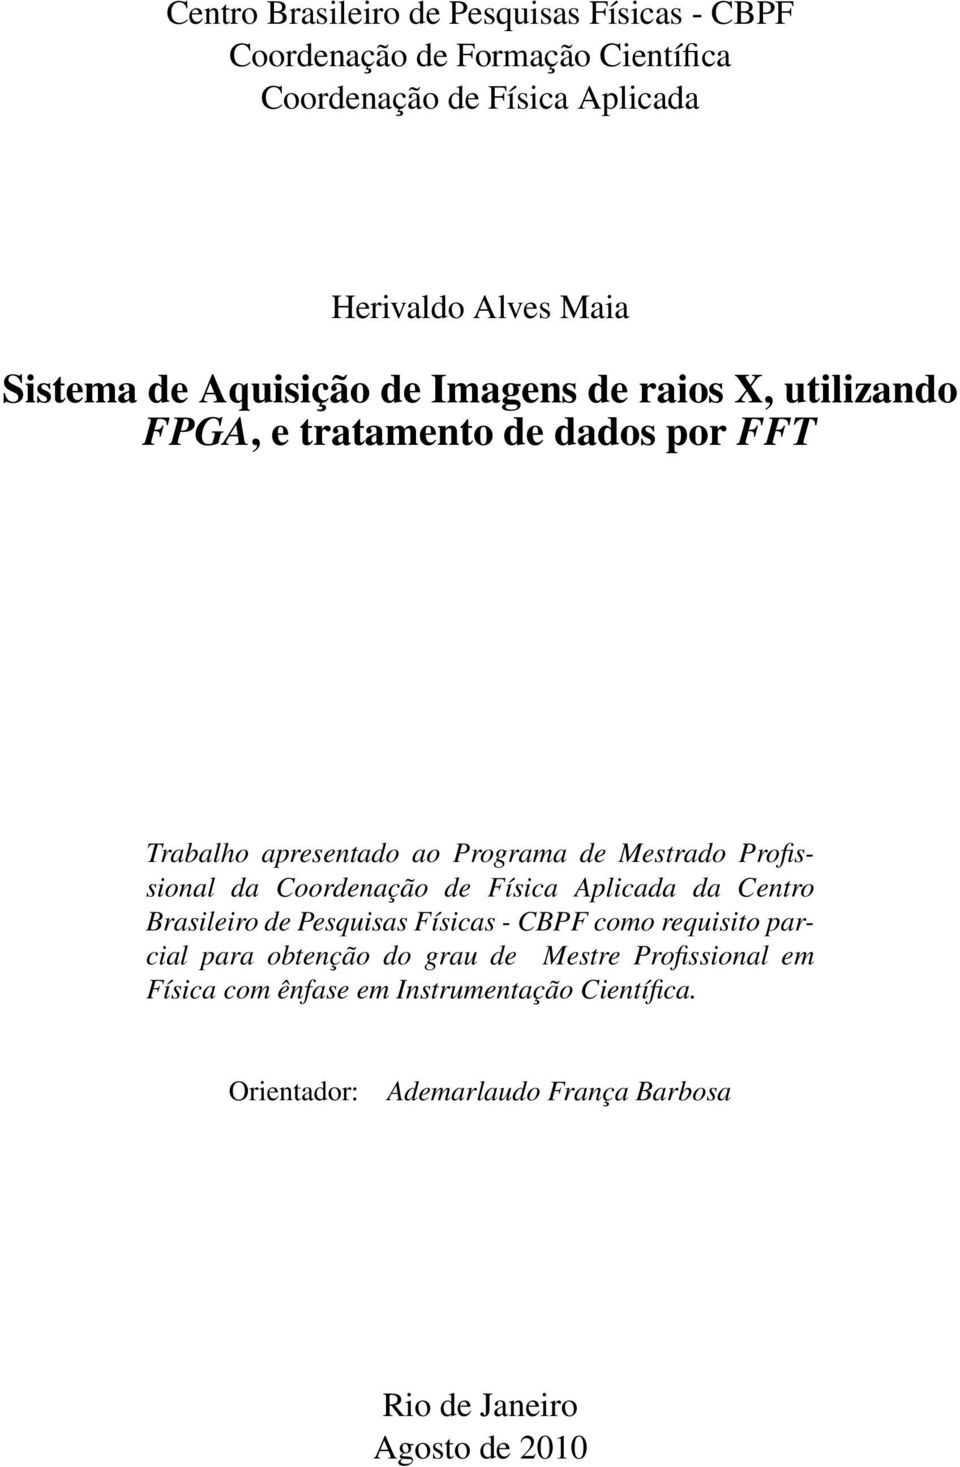 Profissional da Coordenação de Física Aplicada da Centro Brasileiro de Pesquisas Físicas - CBPF como requisito parcial para obtenção do